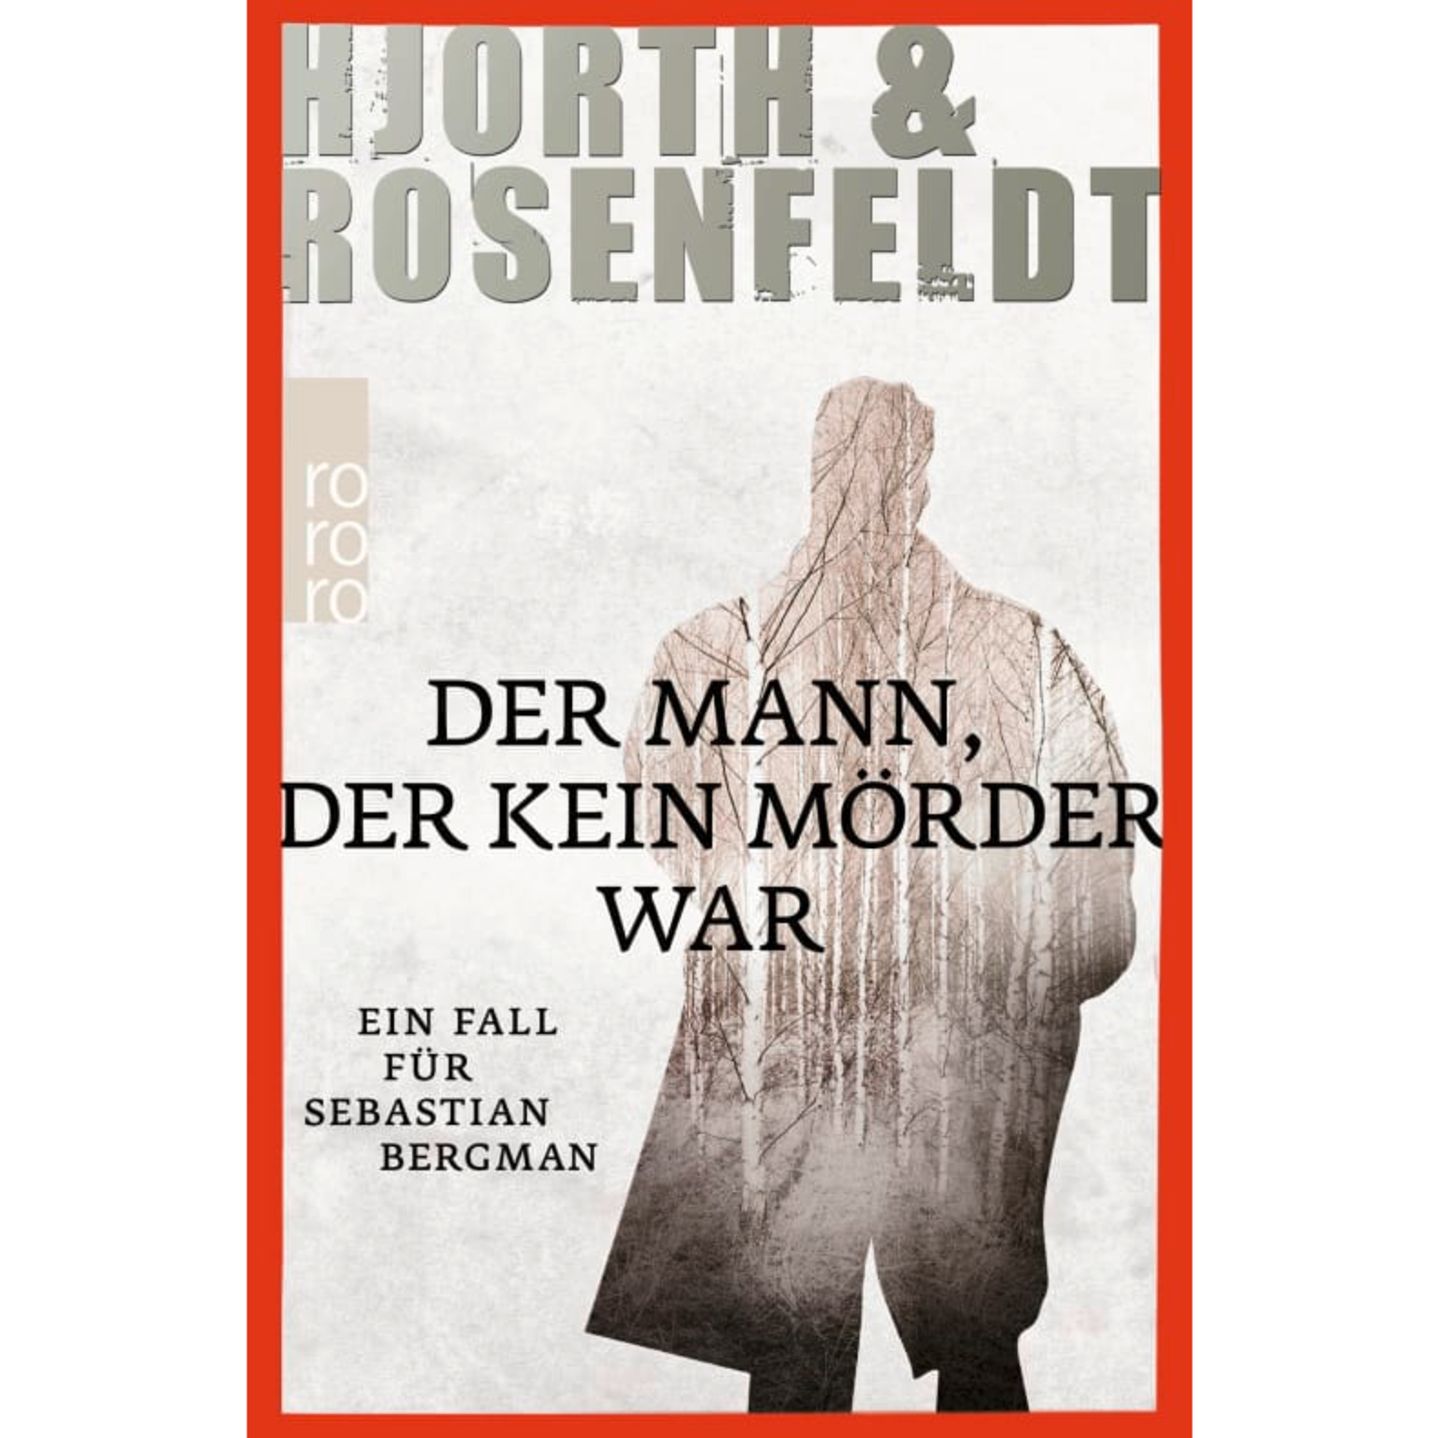 Hjorth & Rosenfeldt: Der Mann, der kein Mörder war